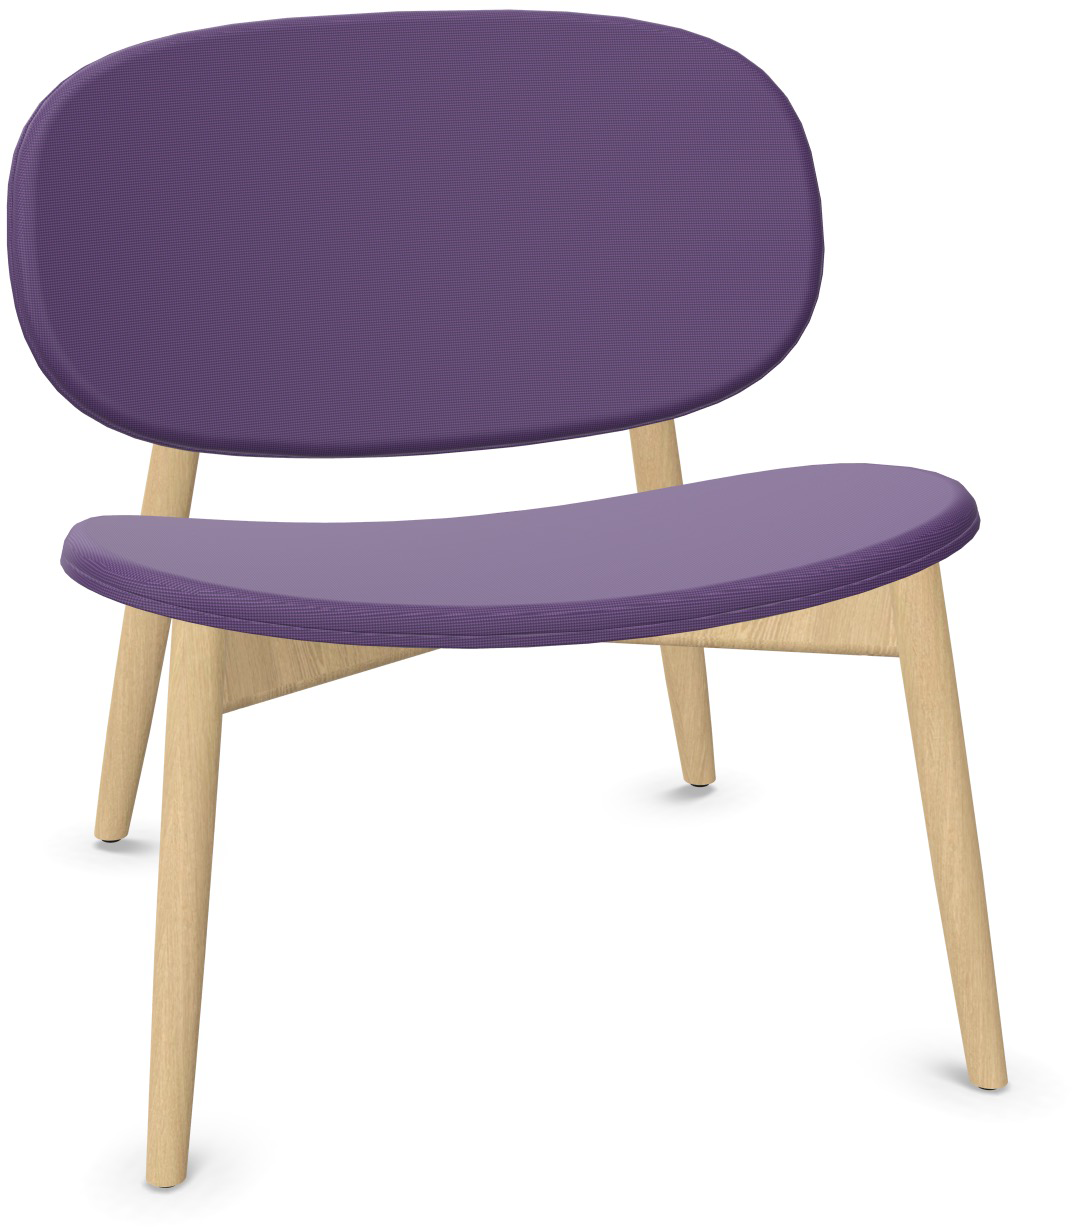 HARMO Relaxsessel in Violett präsentiert im Onlineshop von KAQTU Design AG. Sessel ist von Infiniti Design